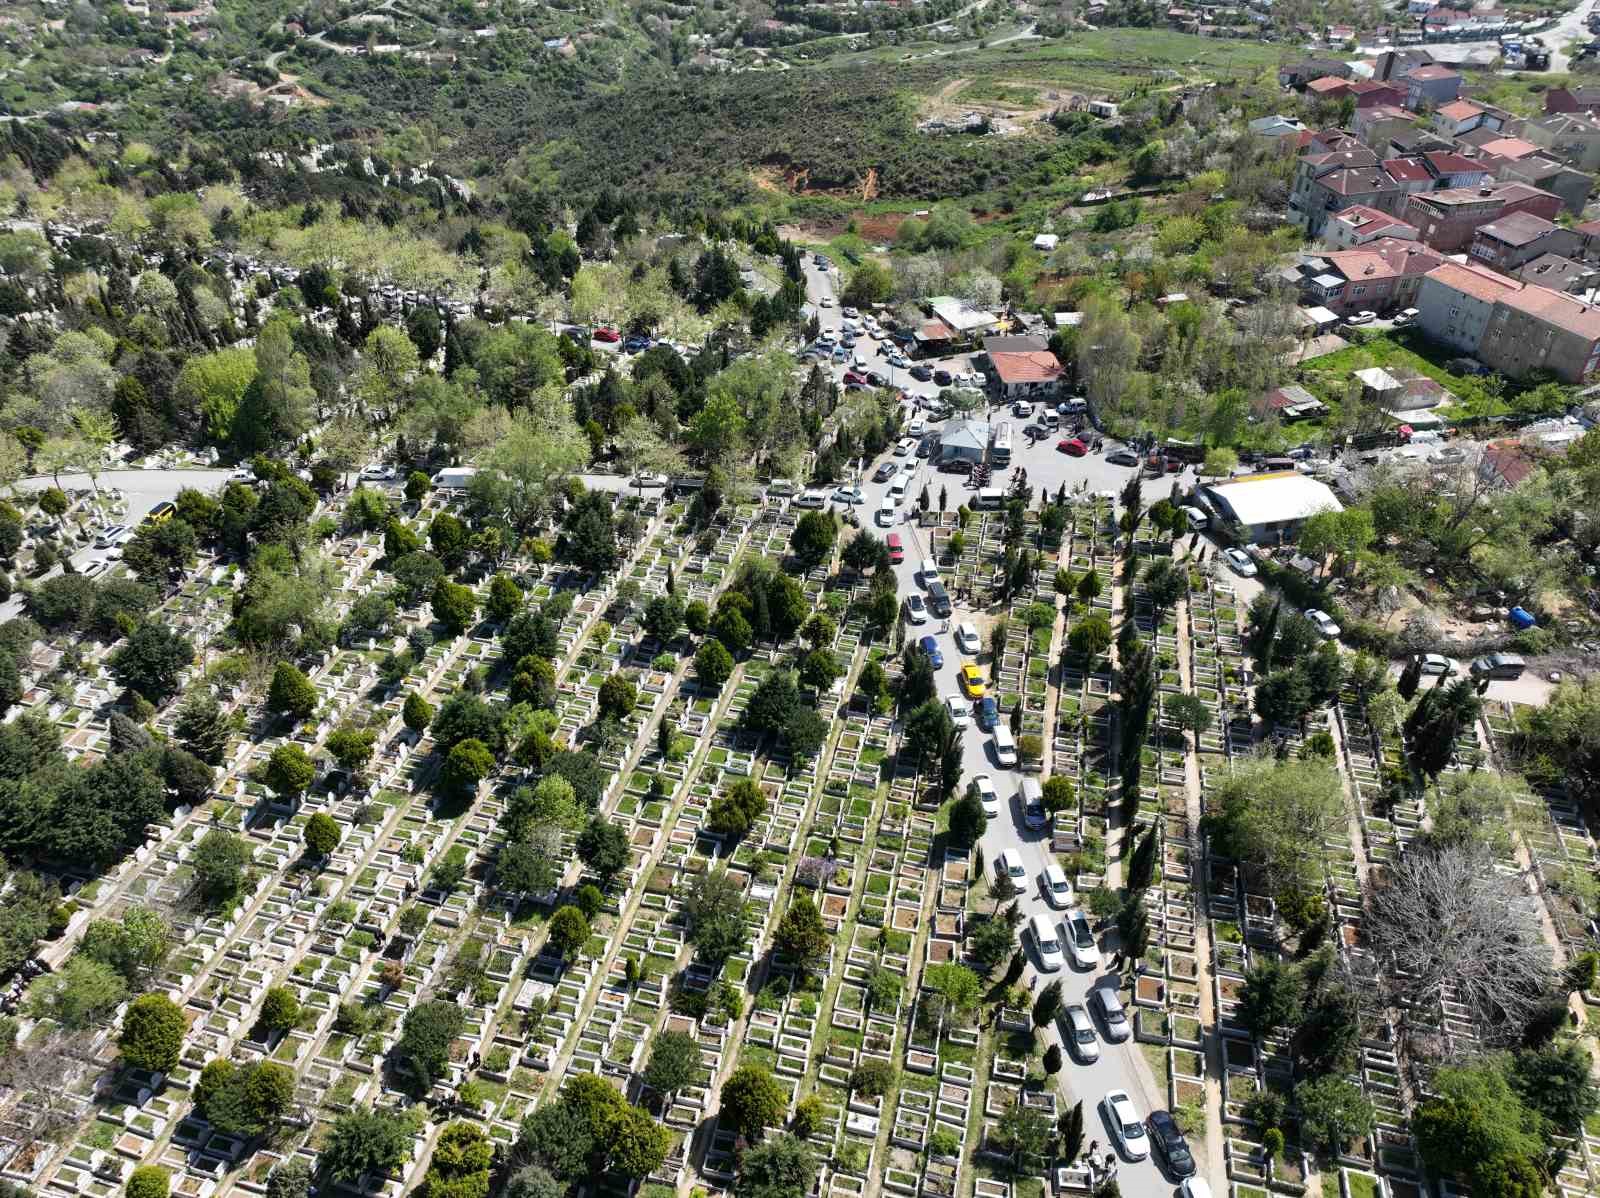 sultangazide mezarlik yolunda uzun arac kuyrugu olustu 2 BCIlIYkP